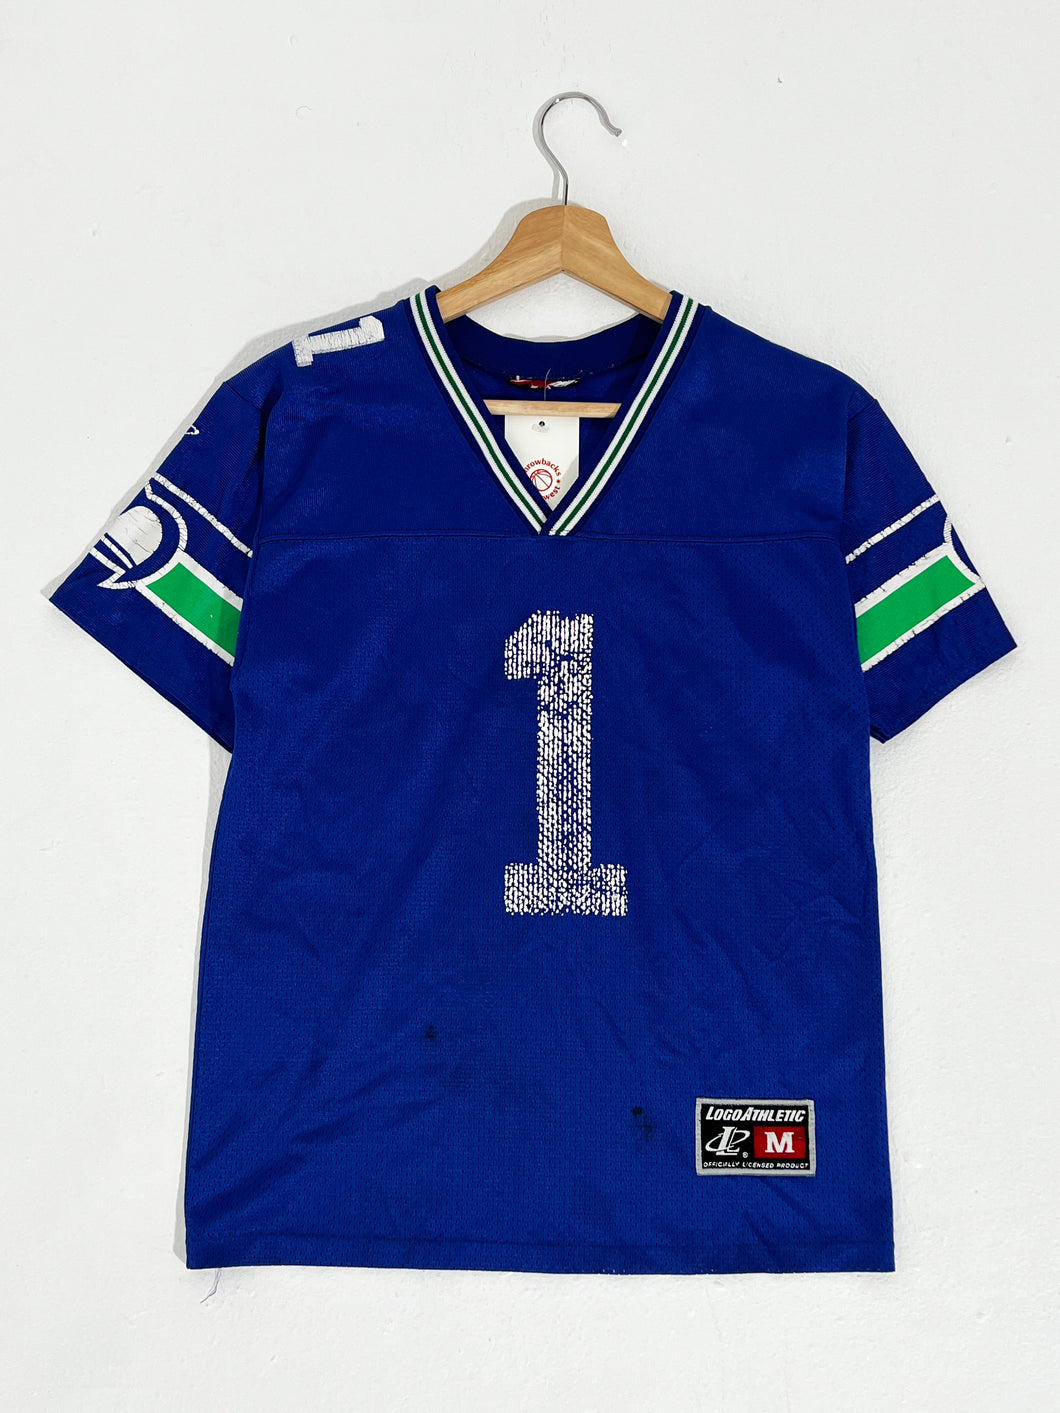 Seattle Seahawks Throwback Jerseys, Vintage NFL Gear